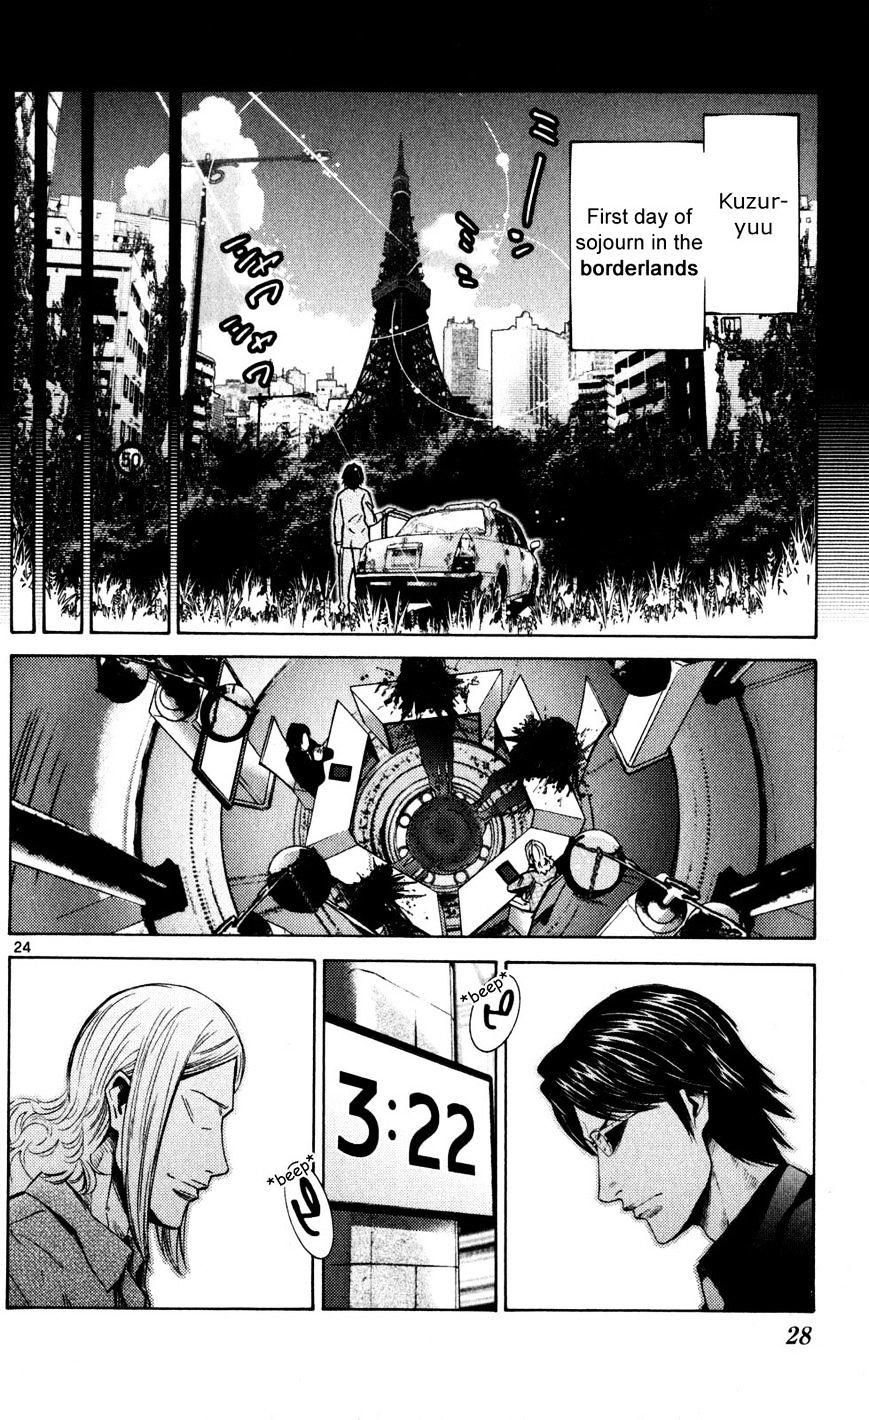 Imawa No Kuni No Alice Chapter 51.4 : Side Story 6 - King Of Diamonds (4) page 27 - Mangakakalot